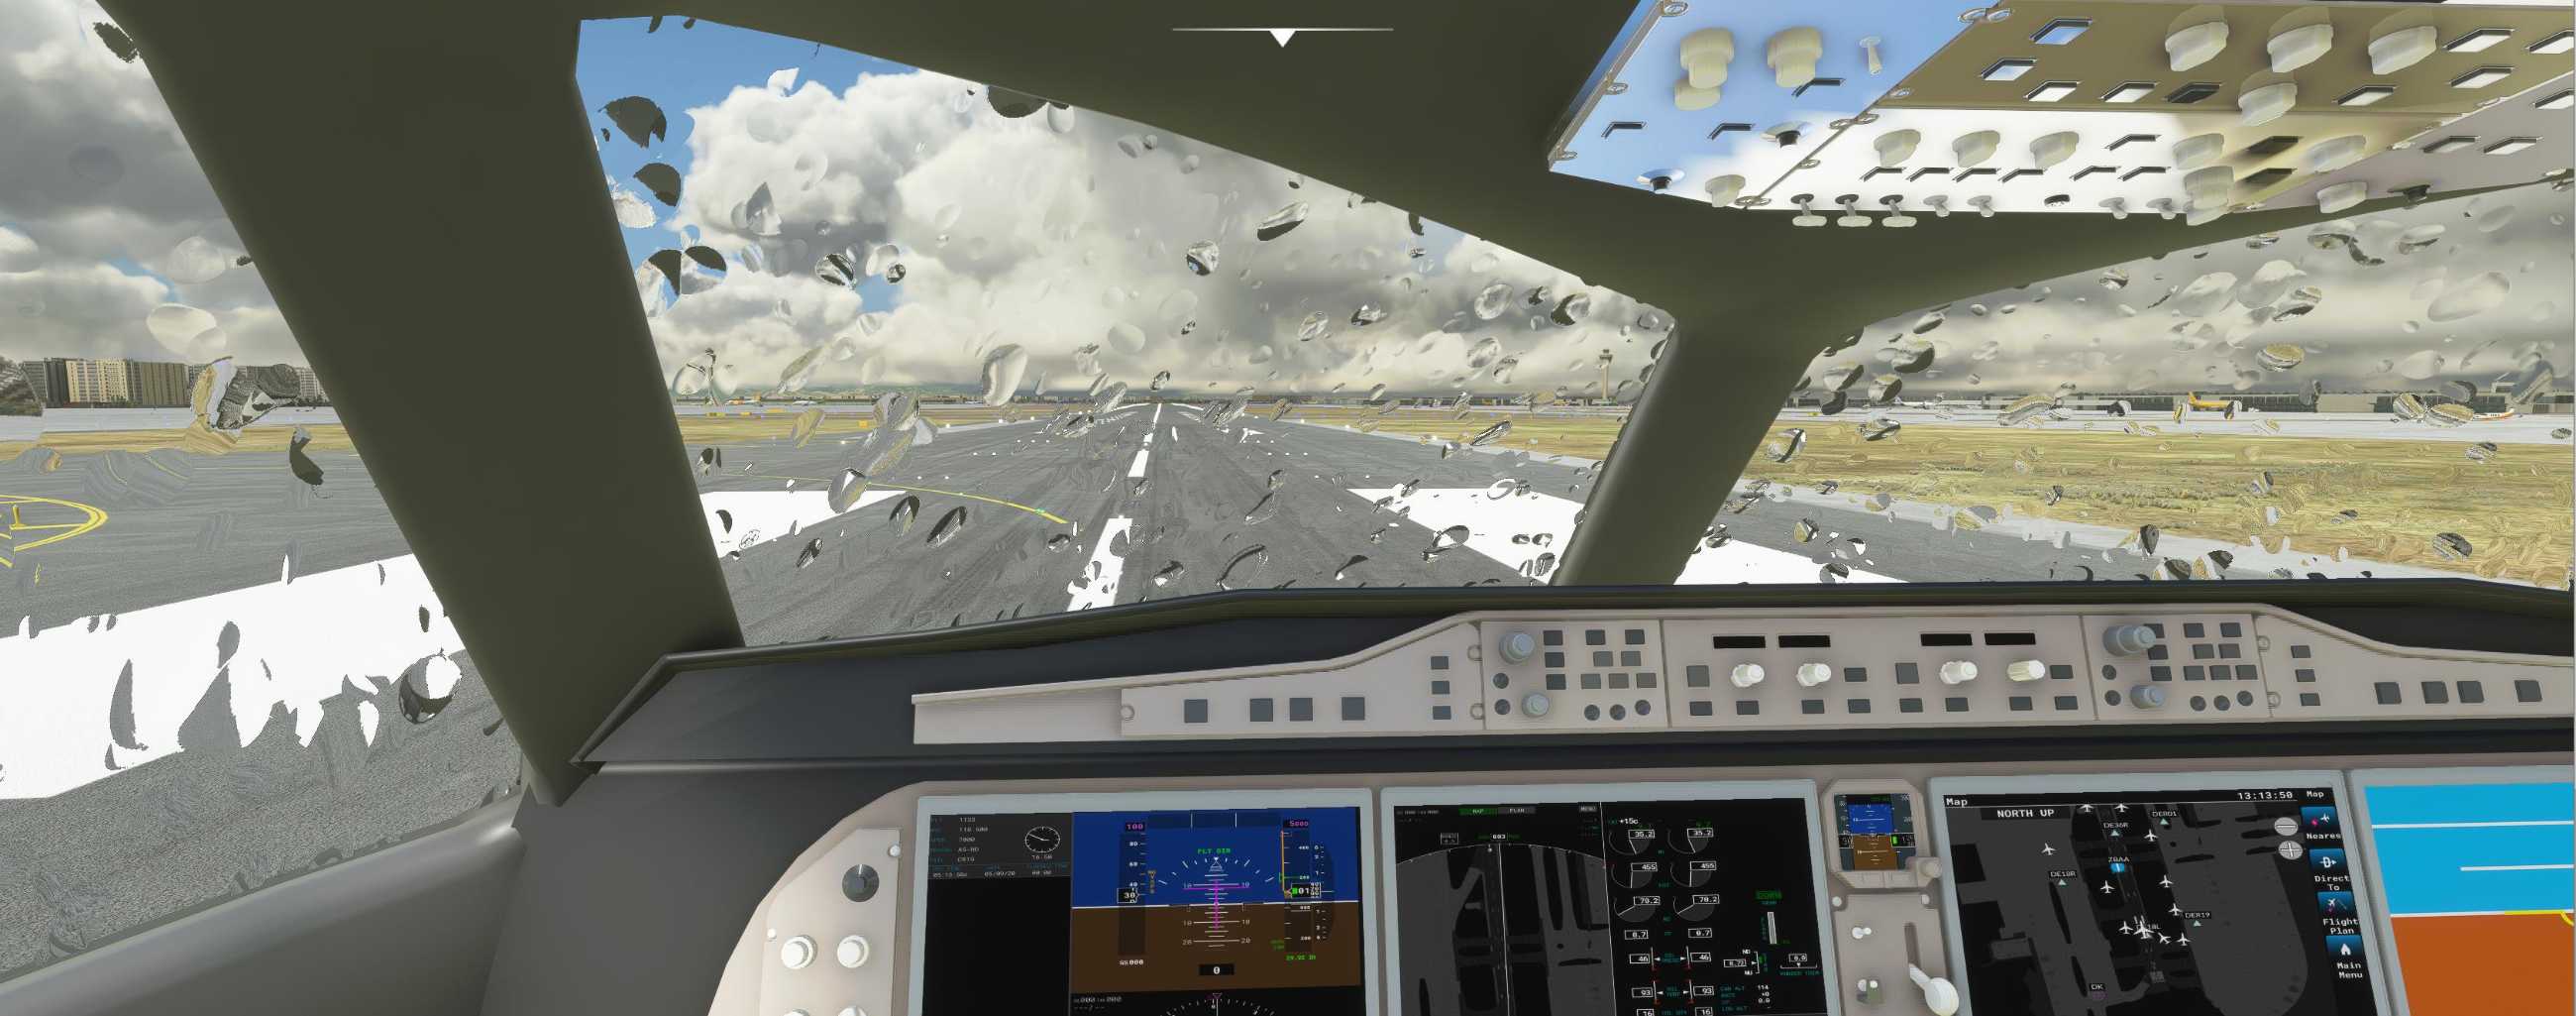 FYCYC-C919 国产大飞机机模 微软模拟飞行演示-6140 